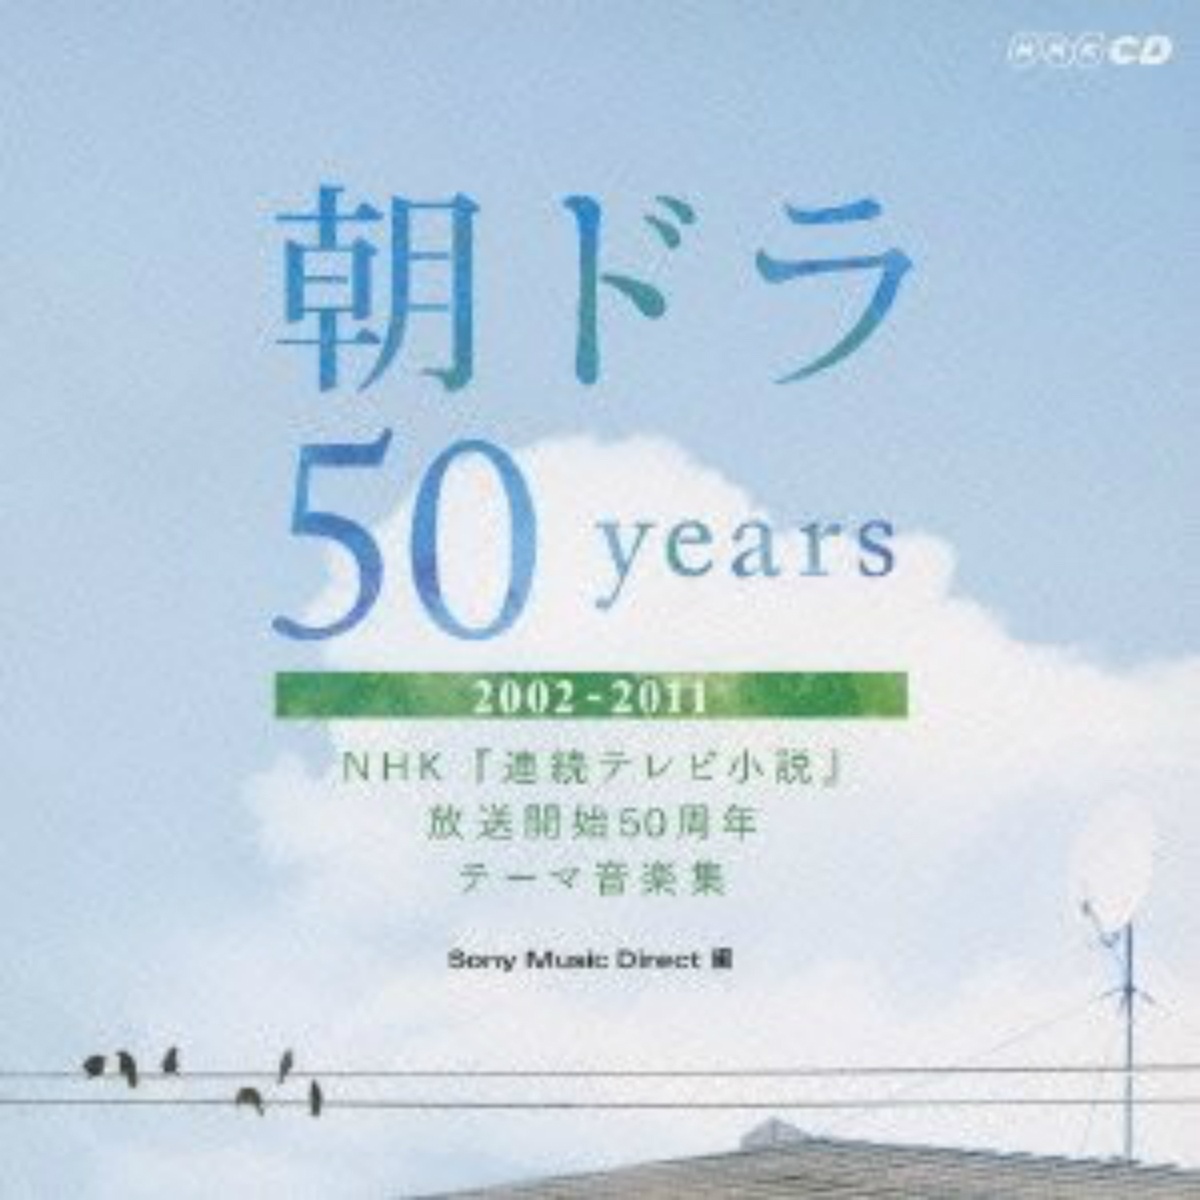 chao 50years NHK lian xu xiao shuo fang song kai shi 50 zhou nian yin le ji 20022011